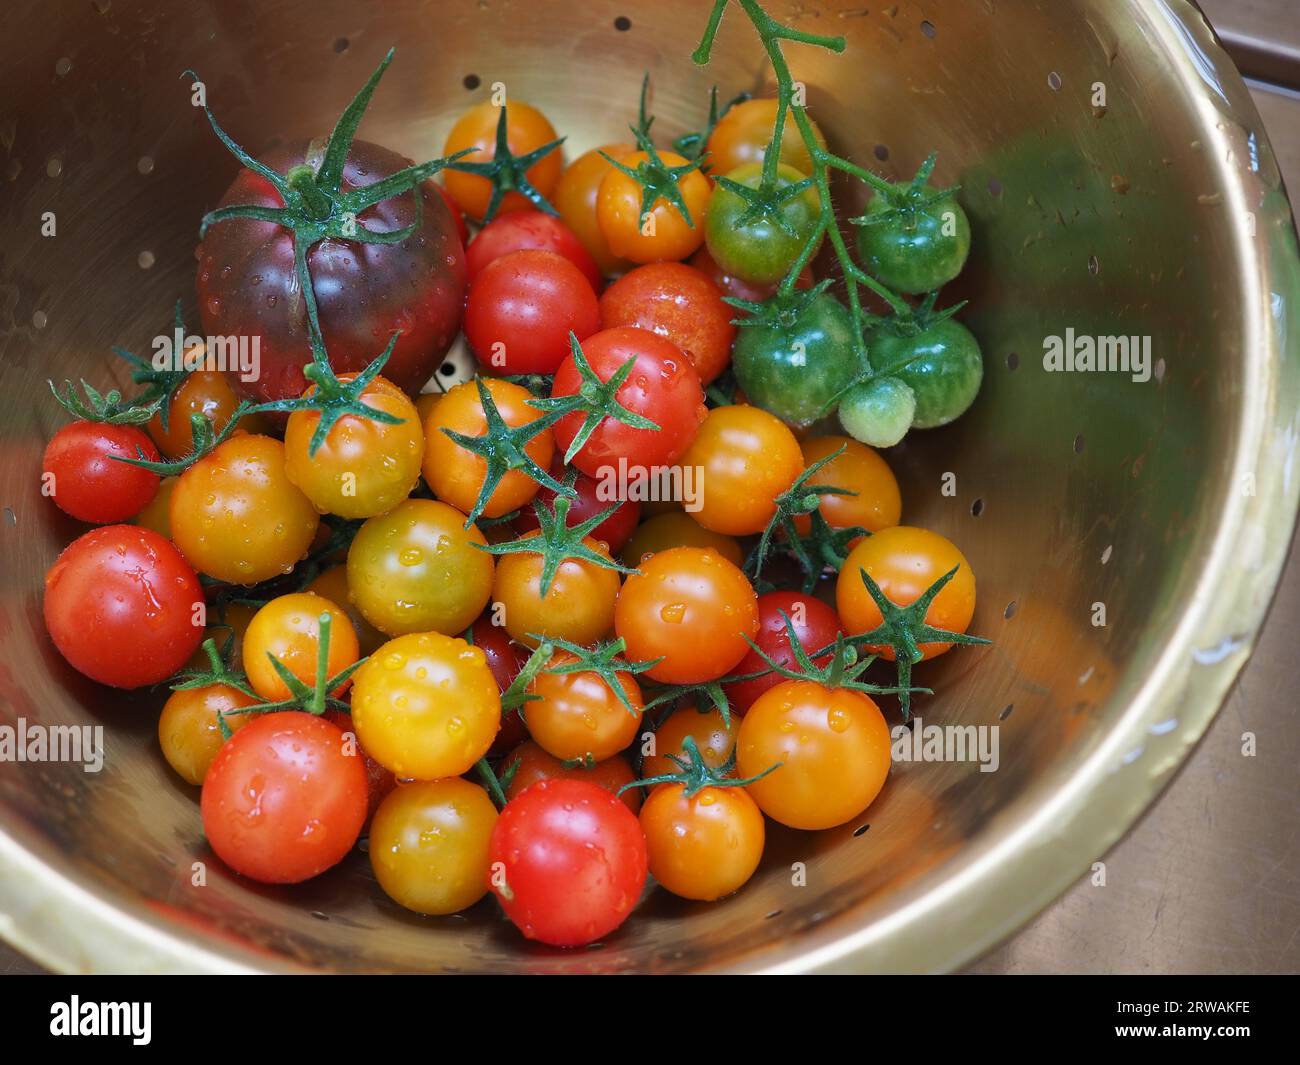 Eine bunte Mischung aus frisch aus dem Garten geernteten Tomaten in einem goldenen Sieb, die die Sorten Gardener's Delight, Sungold und Black Russian zeigen Stockfoto